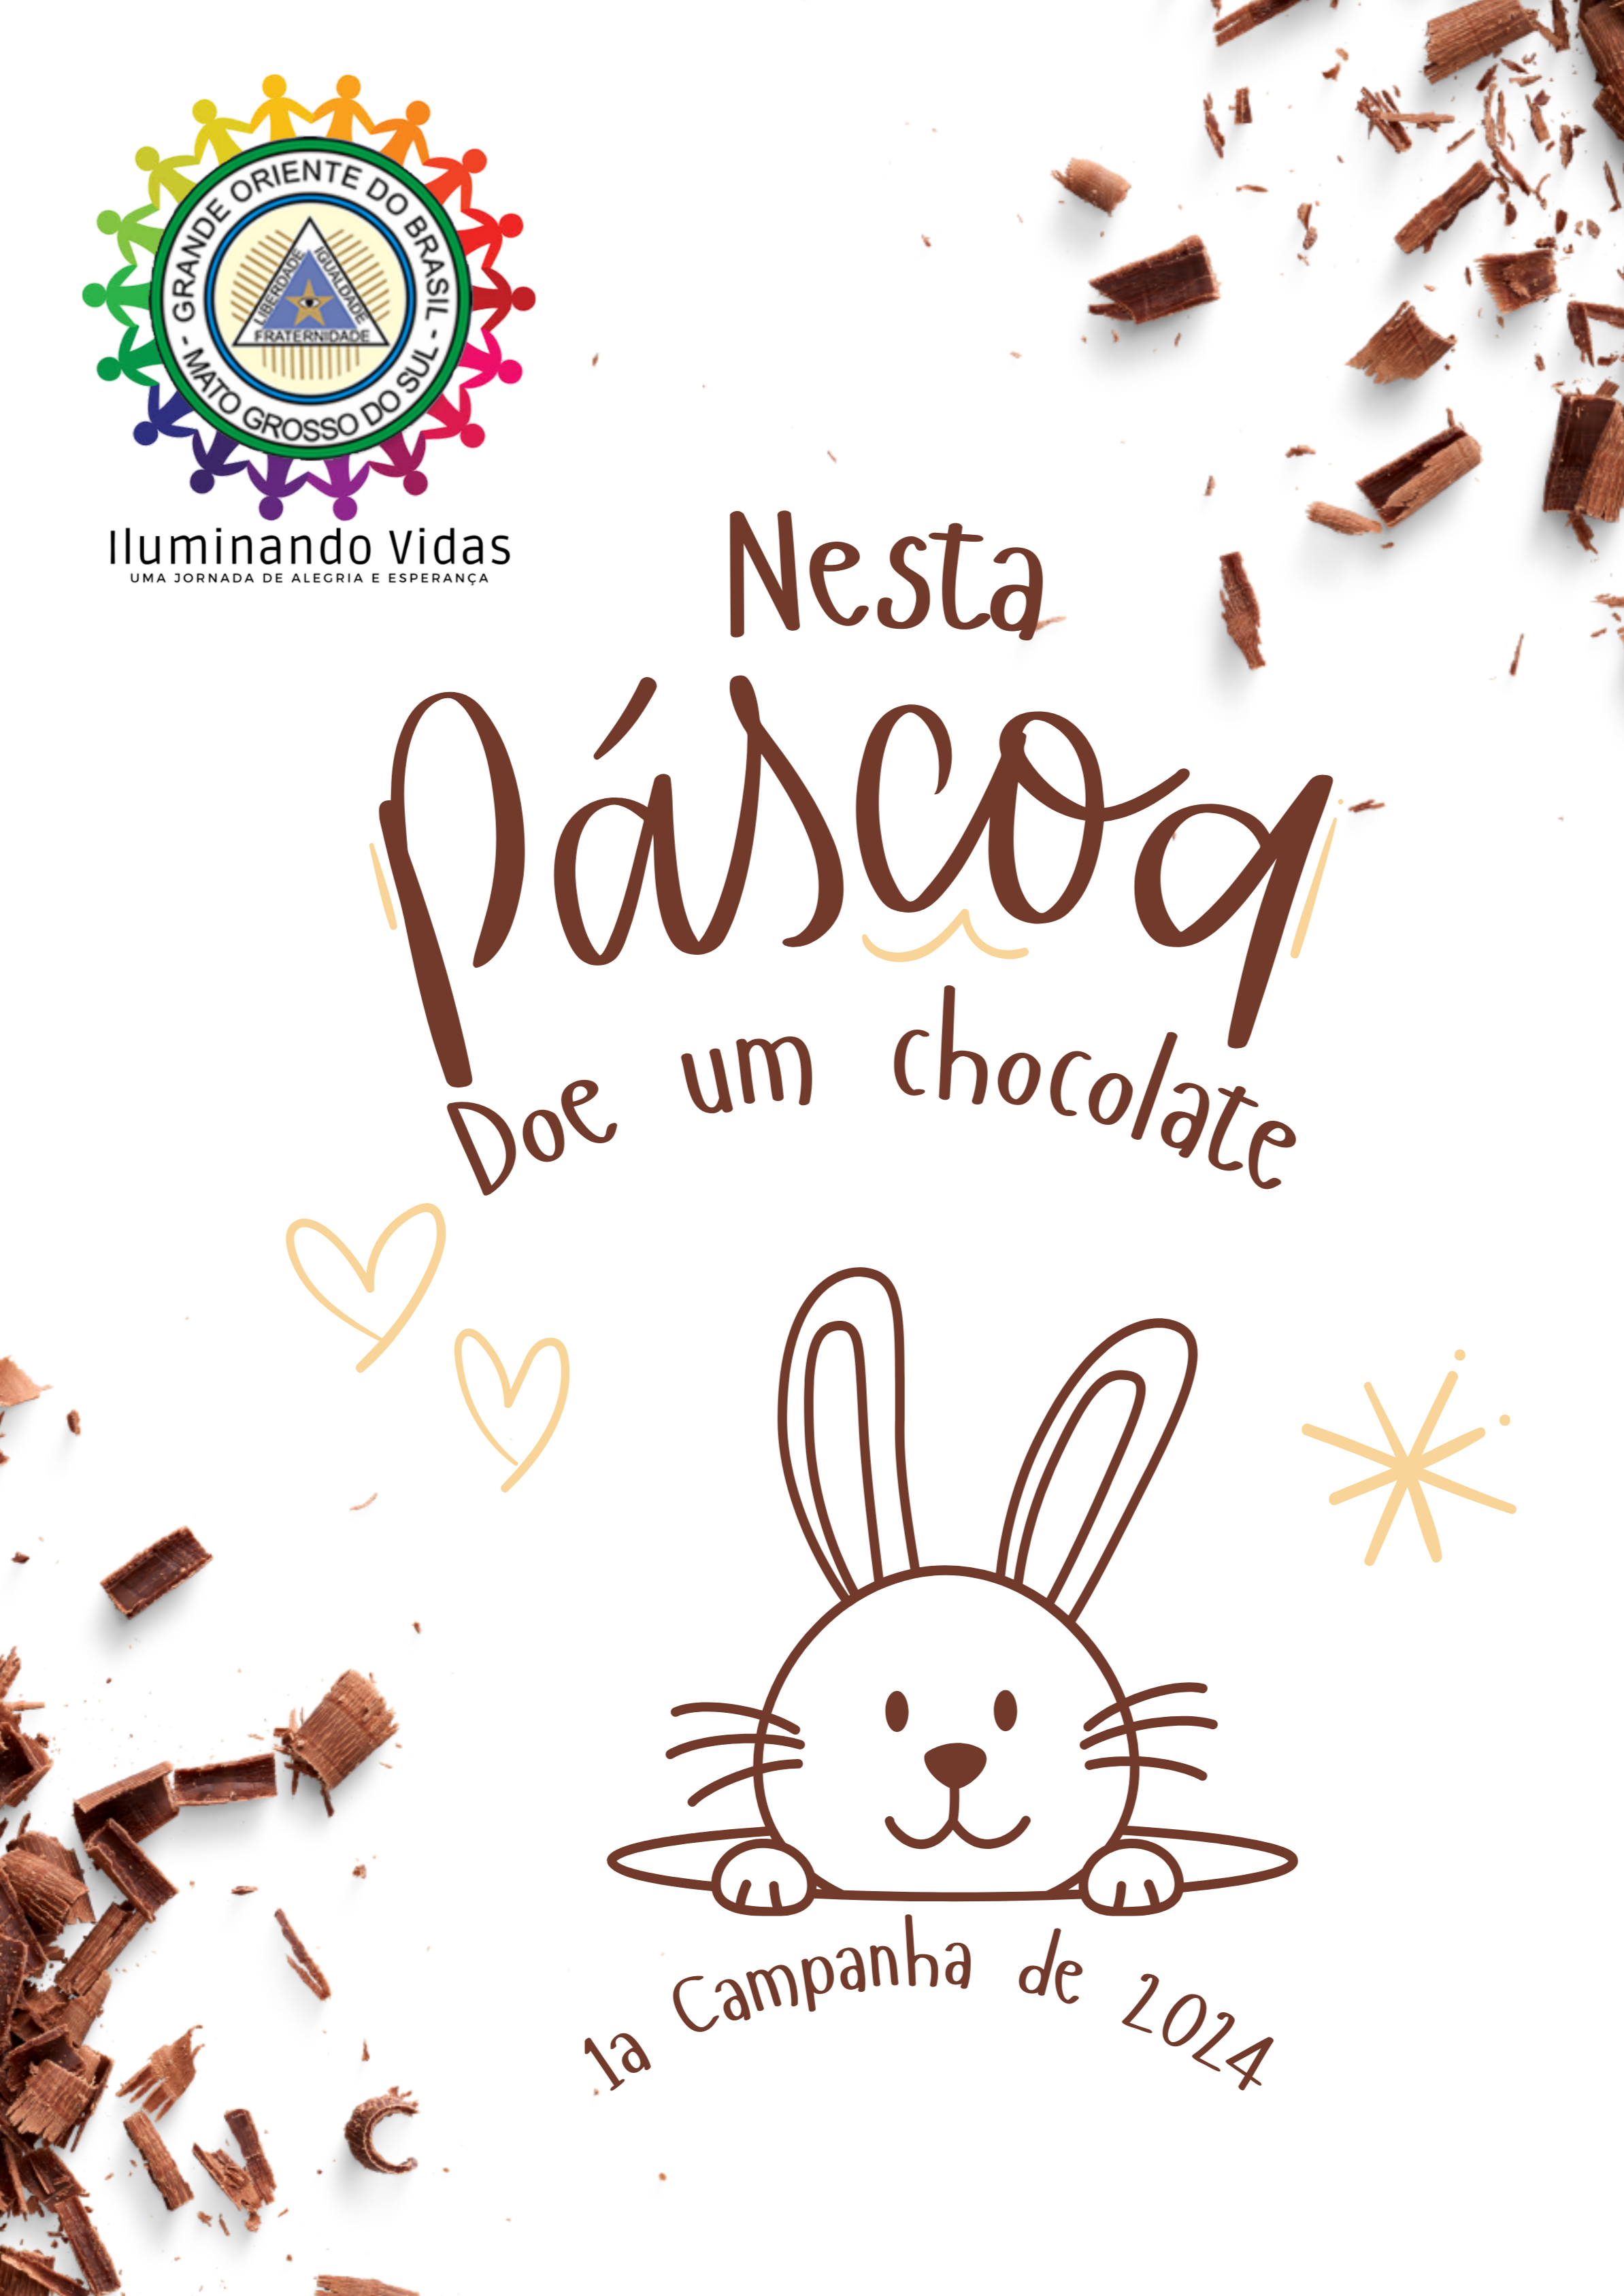 You are currently viewing “Nesta Páscoa doe um Chocolate” – Projeto Iluminando Vidas – GOB-MS